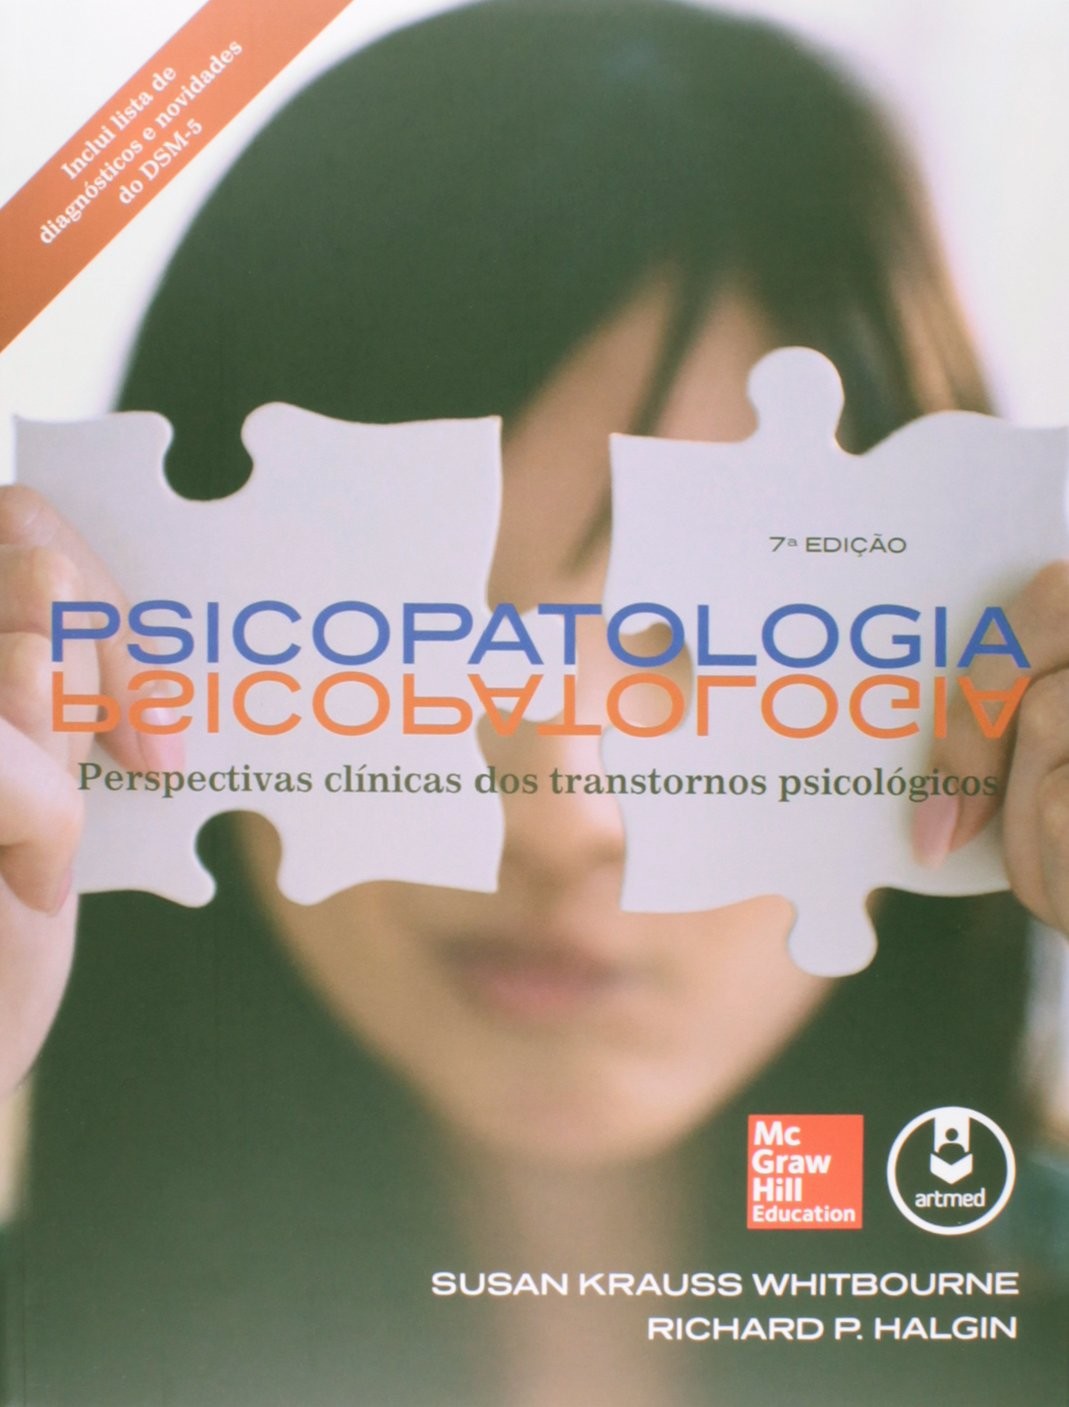 Psicopatologia - Perspectivas Clínicas dos Transtornos Psicológicos